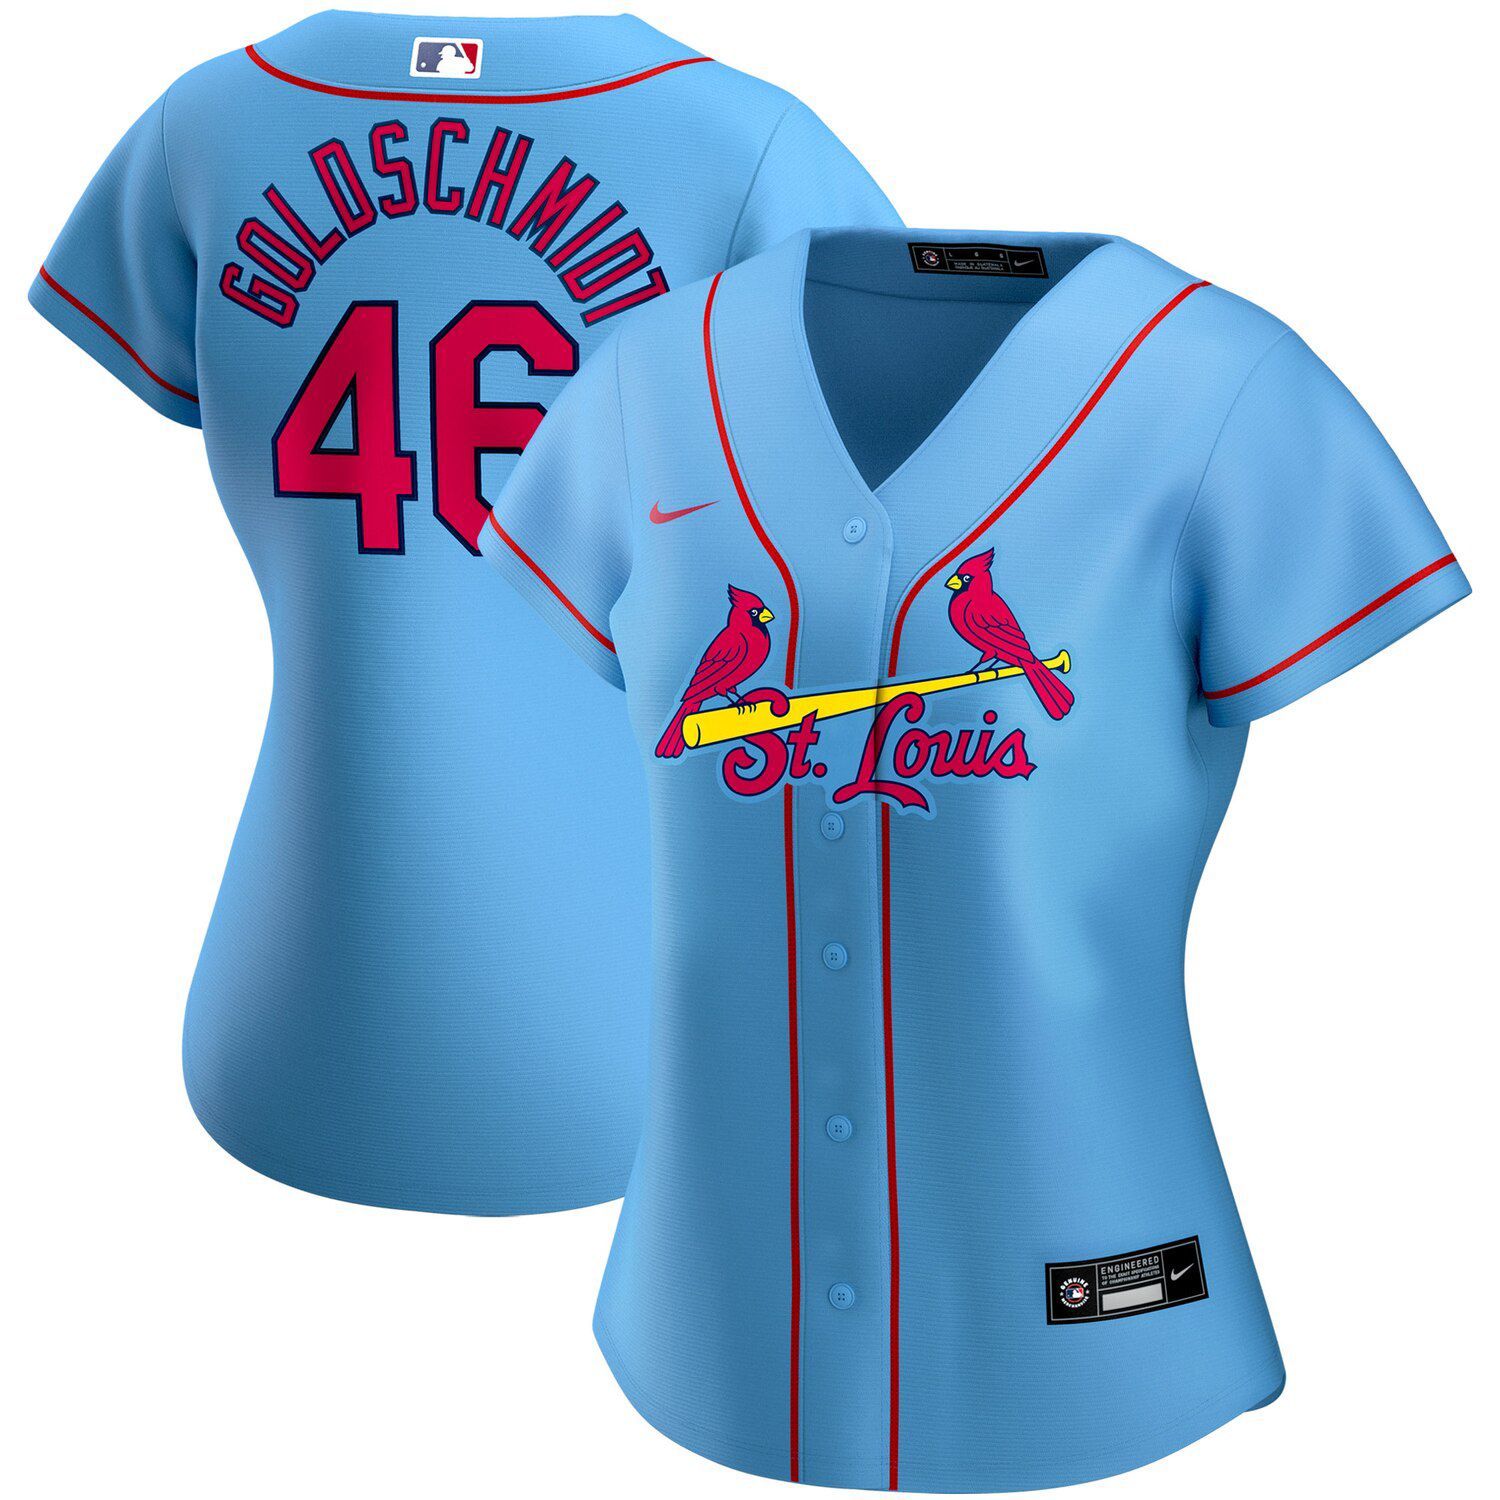 st louis cardinals new blue jersey